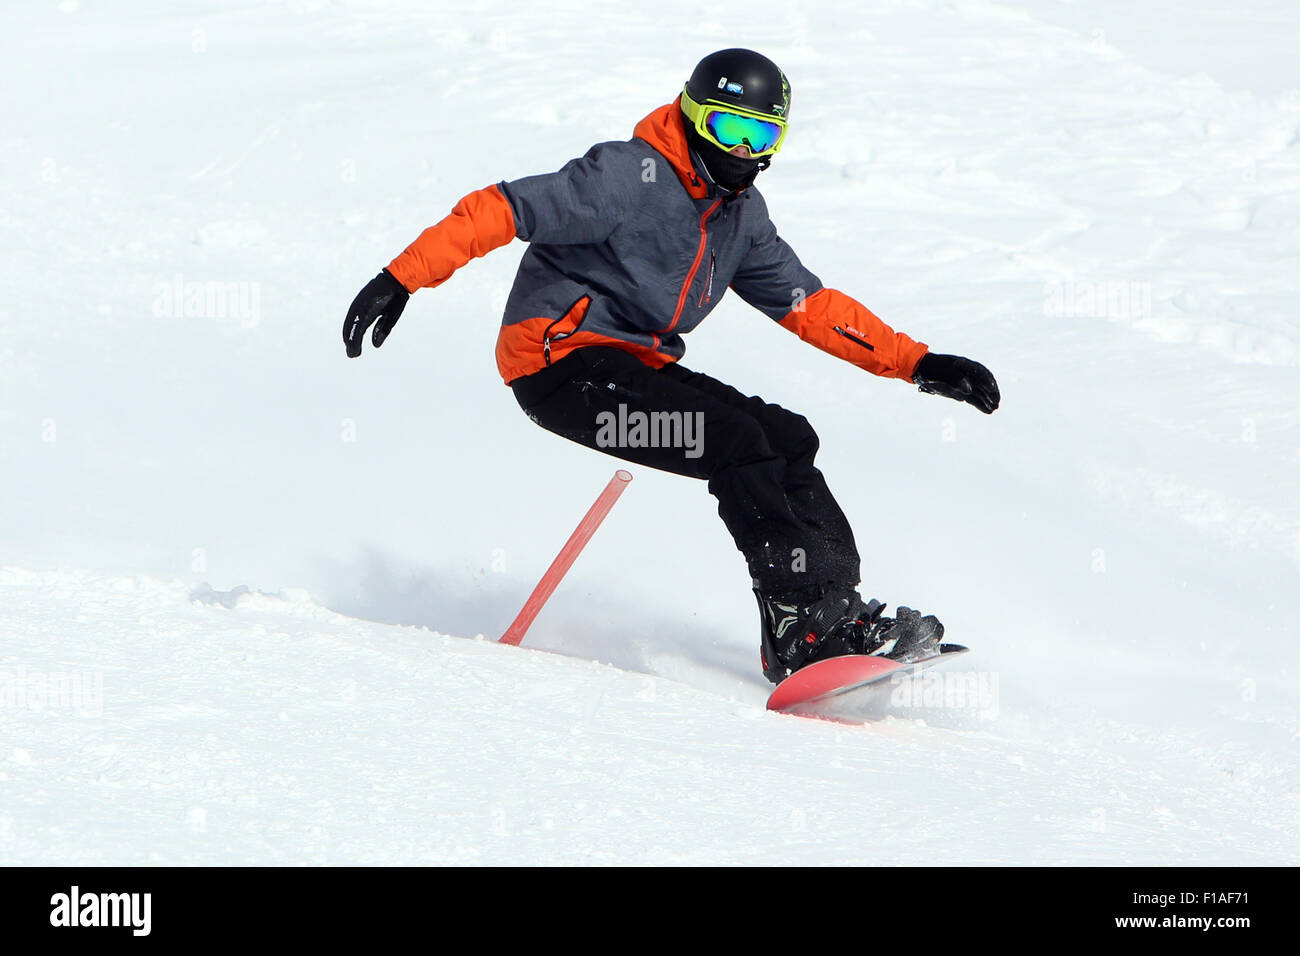 Krippenbrunn, Austria, a boy snowboarding Stock Photo